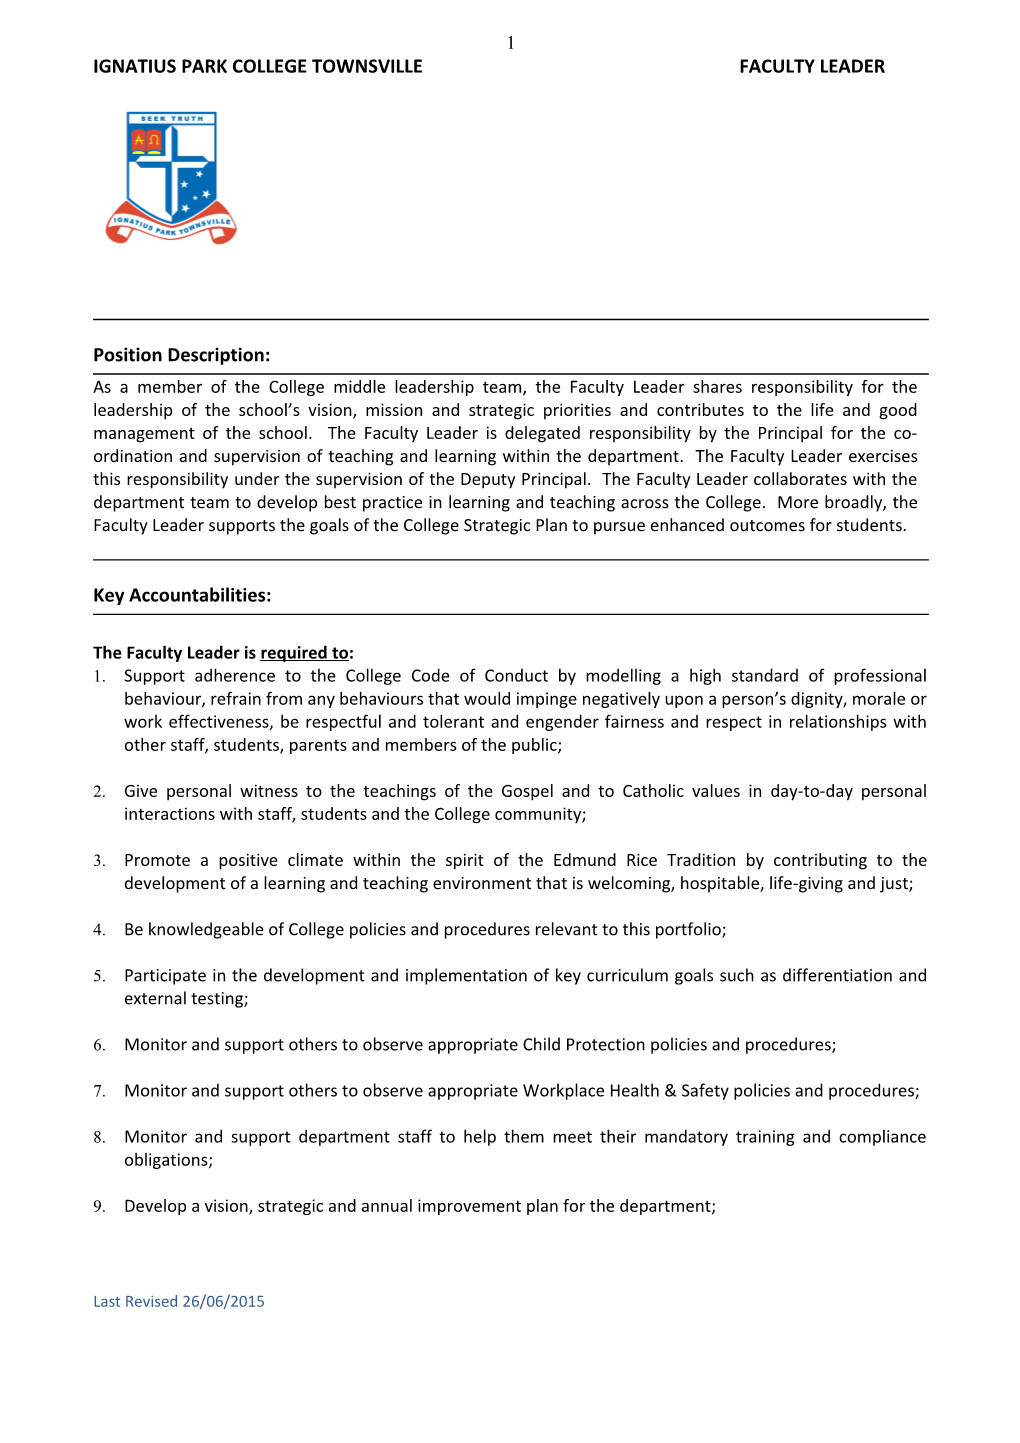 Role Description: HEAD of DEPARTMENT LAST REVISED: 08 APRIL 2014